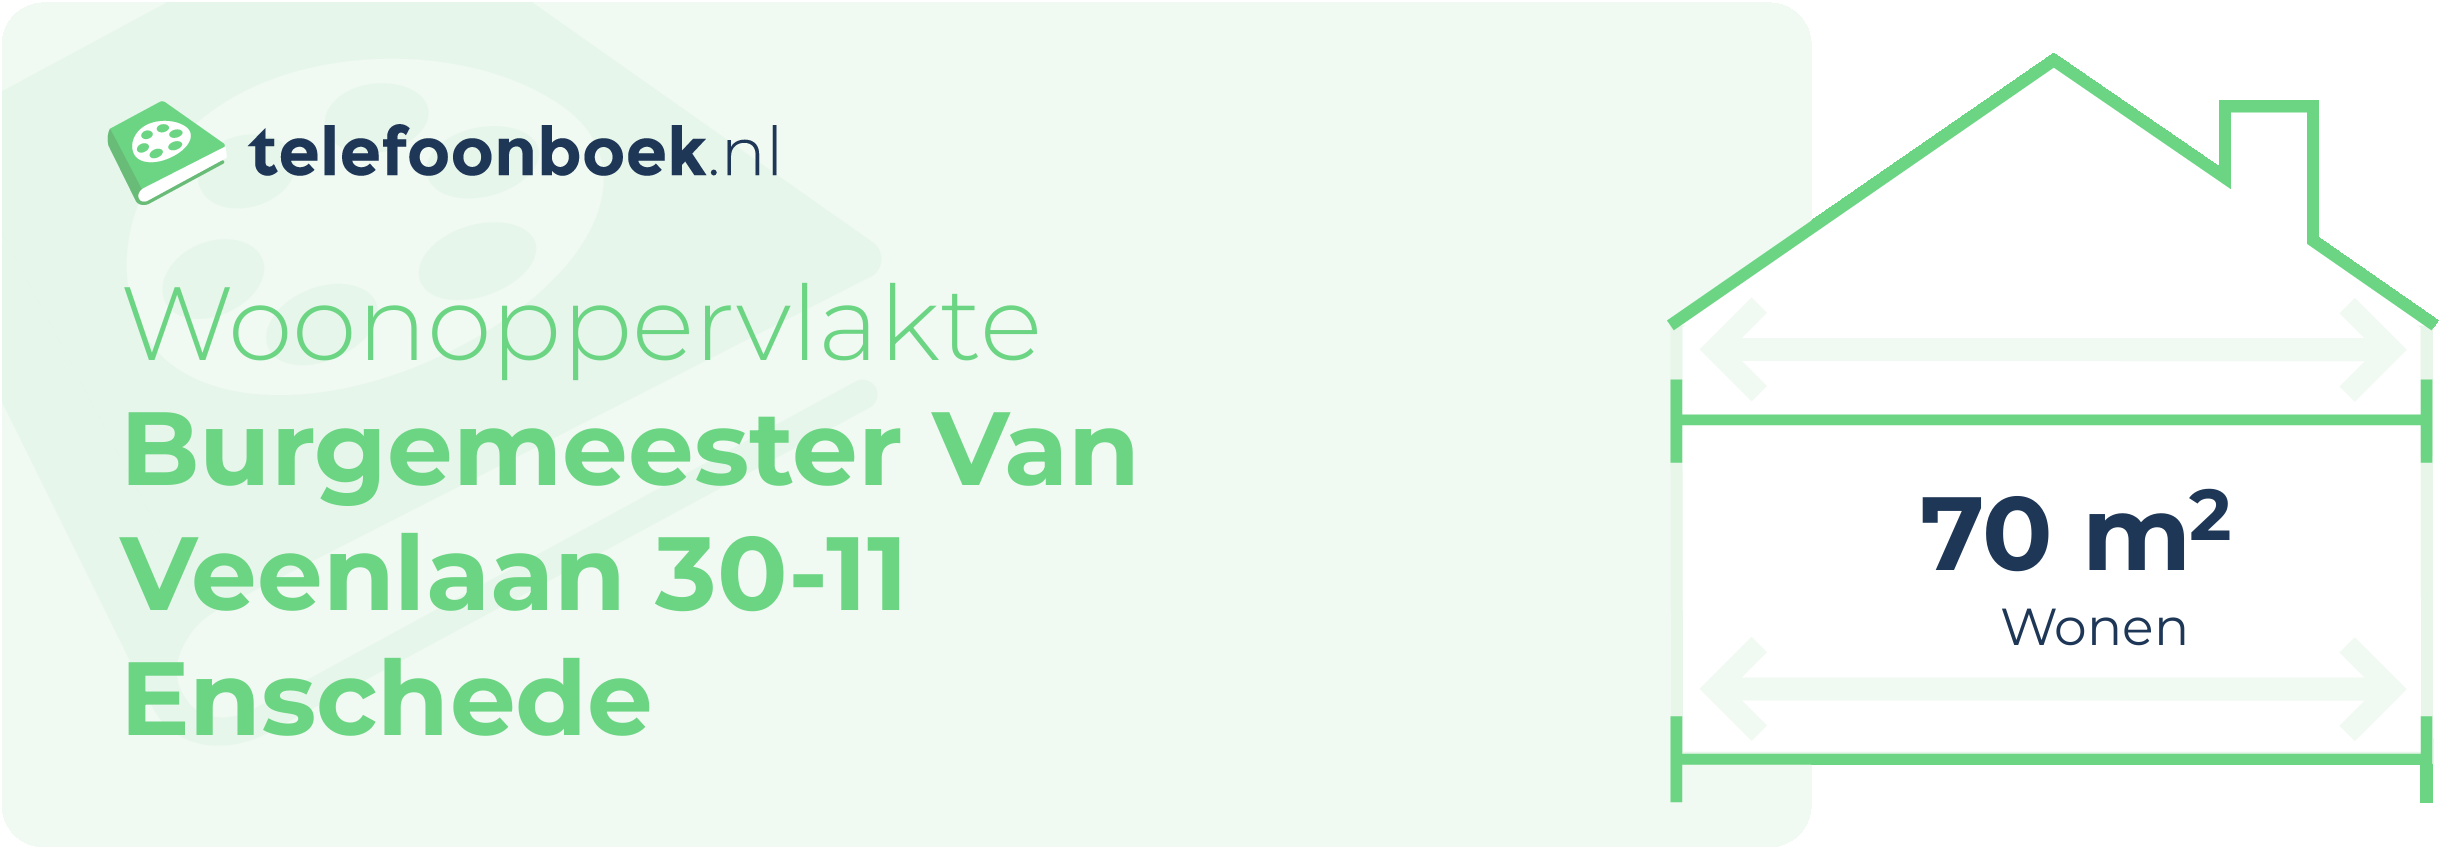 Woonoppervlakte Burgemeester Van Veenlaan 30-11 Enschede